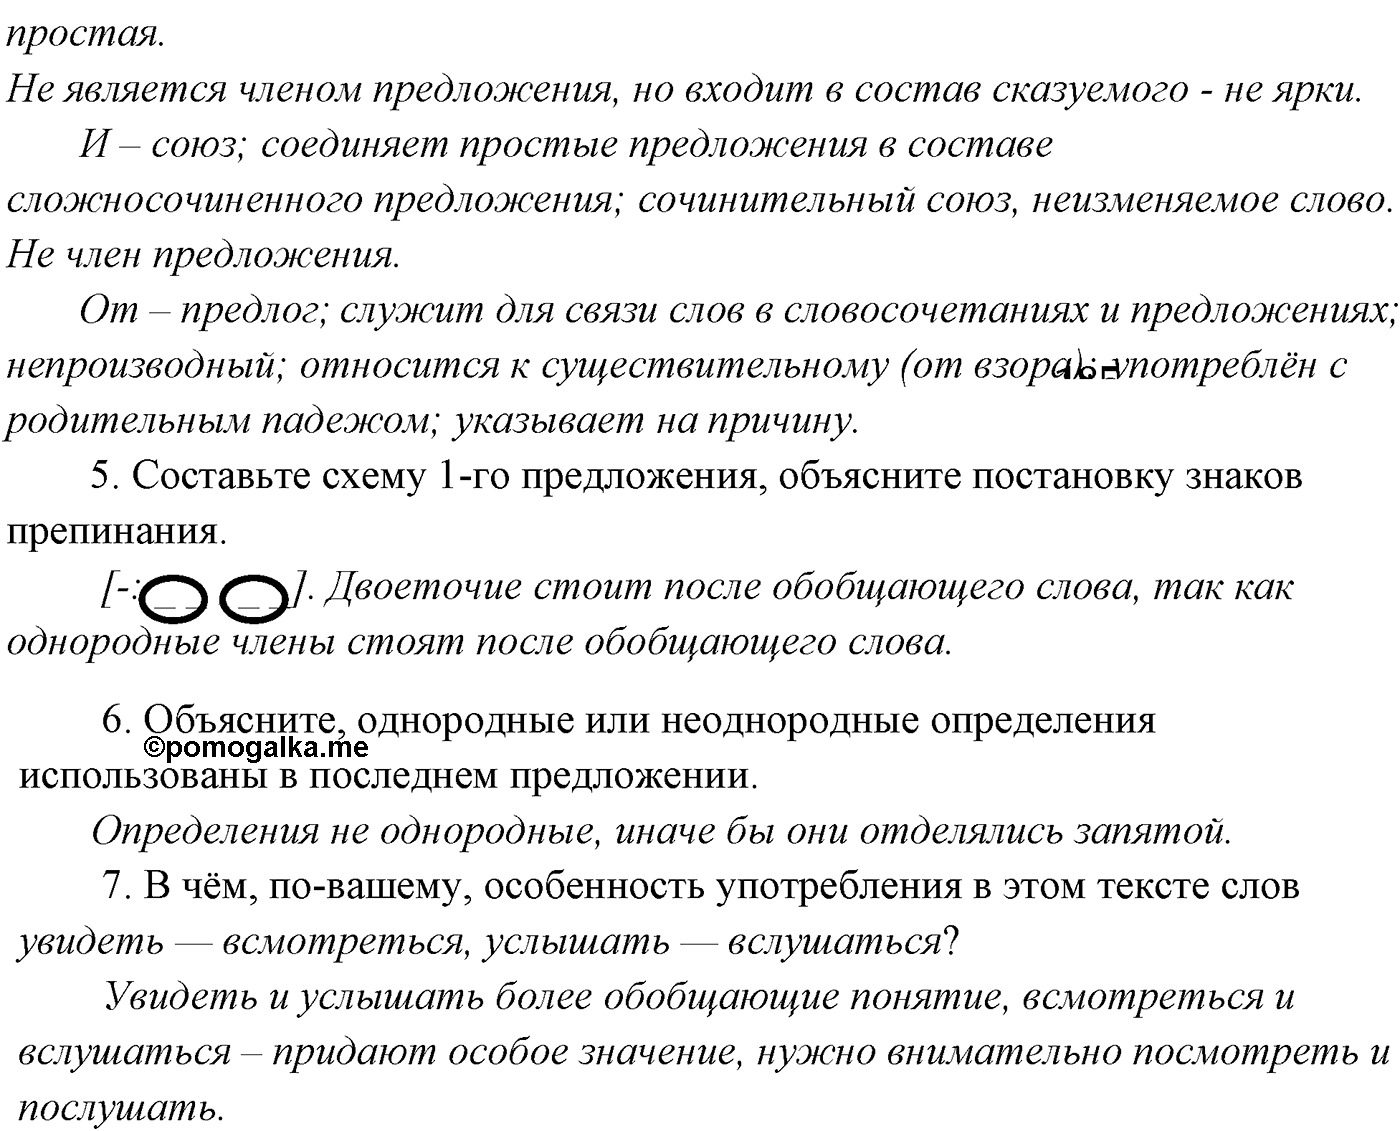 страница 173 номер 241 русский язык 9 класс Разумовская 2011 год